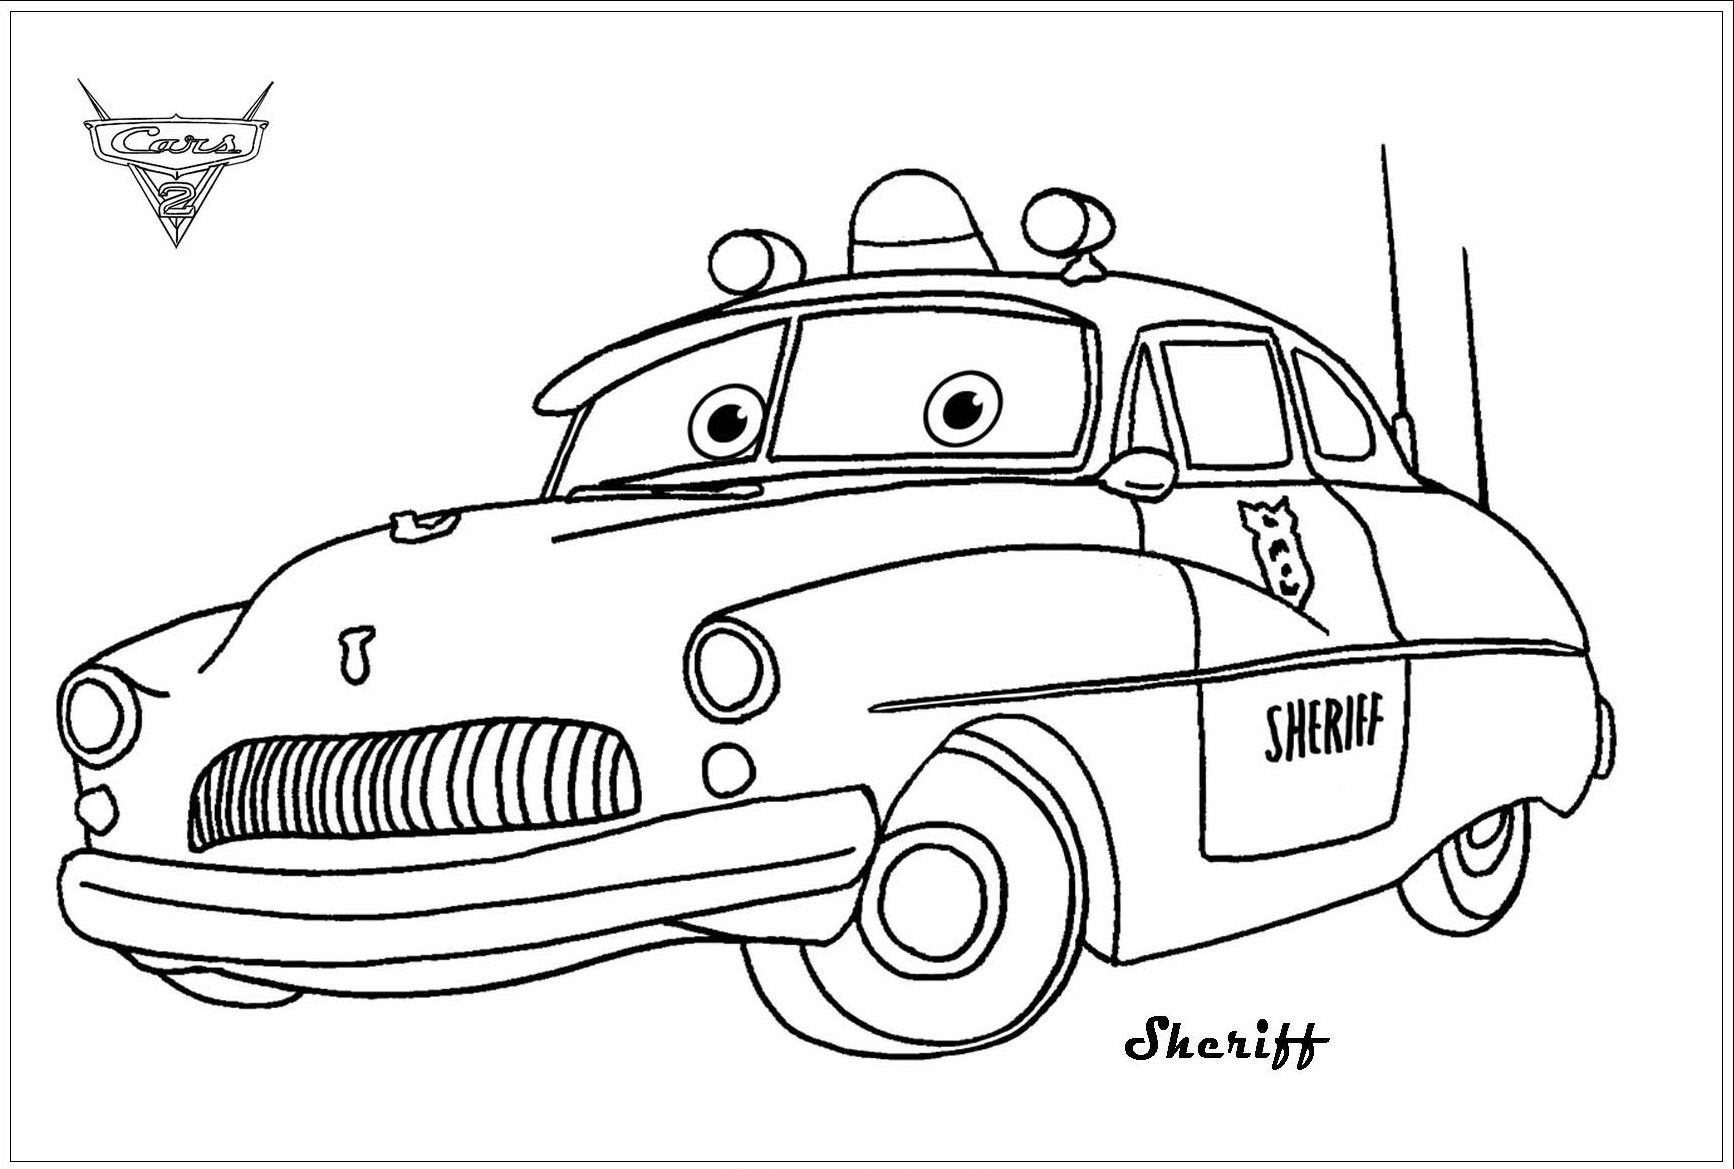 Shériff, belle voiture issue de Cars 2 de Disney / Pixar. Incarnant l’autorité à Radiator Springs, Shériff épingle Flash lors d’un excès de vitesse après une course-poursuite.